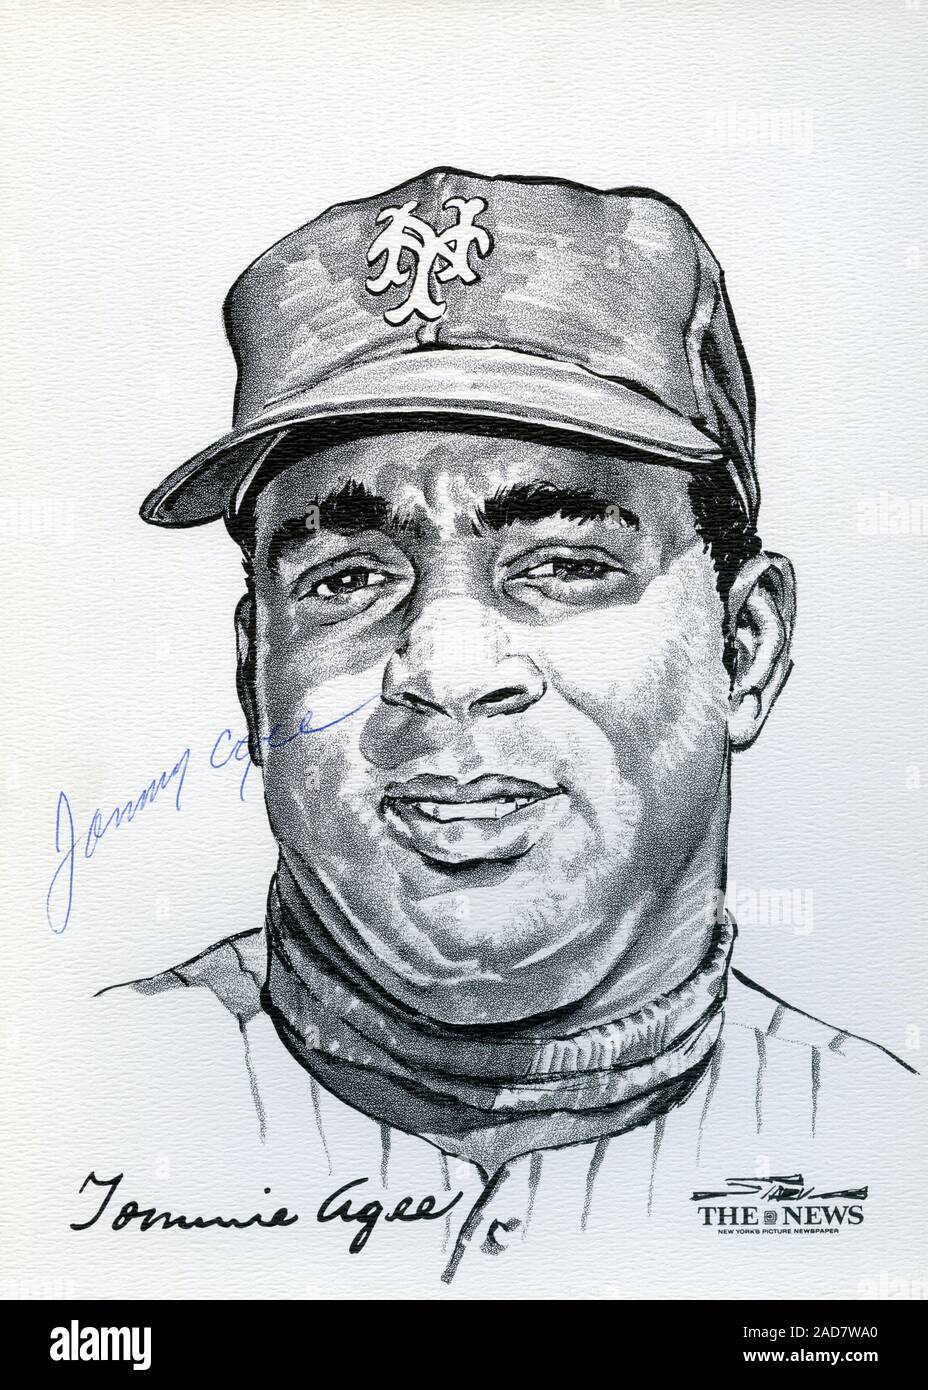 Ritratto di New York Mets player Tommie Aghè dal 1969 miracolo Mets squadra che ha vinto la World Series per artista Stark e rilasciato come un portafoglio di souvenir dalle notizie di New York. Foto Stock